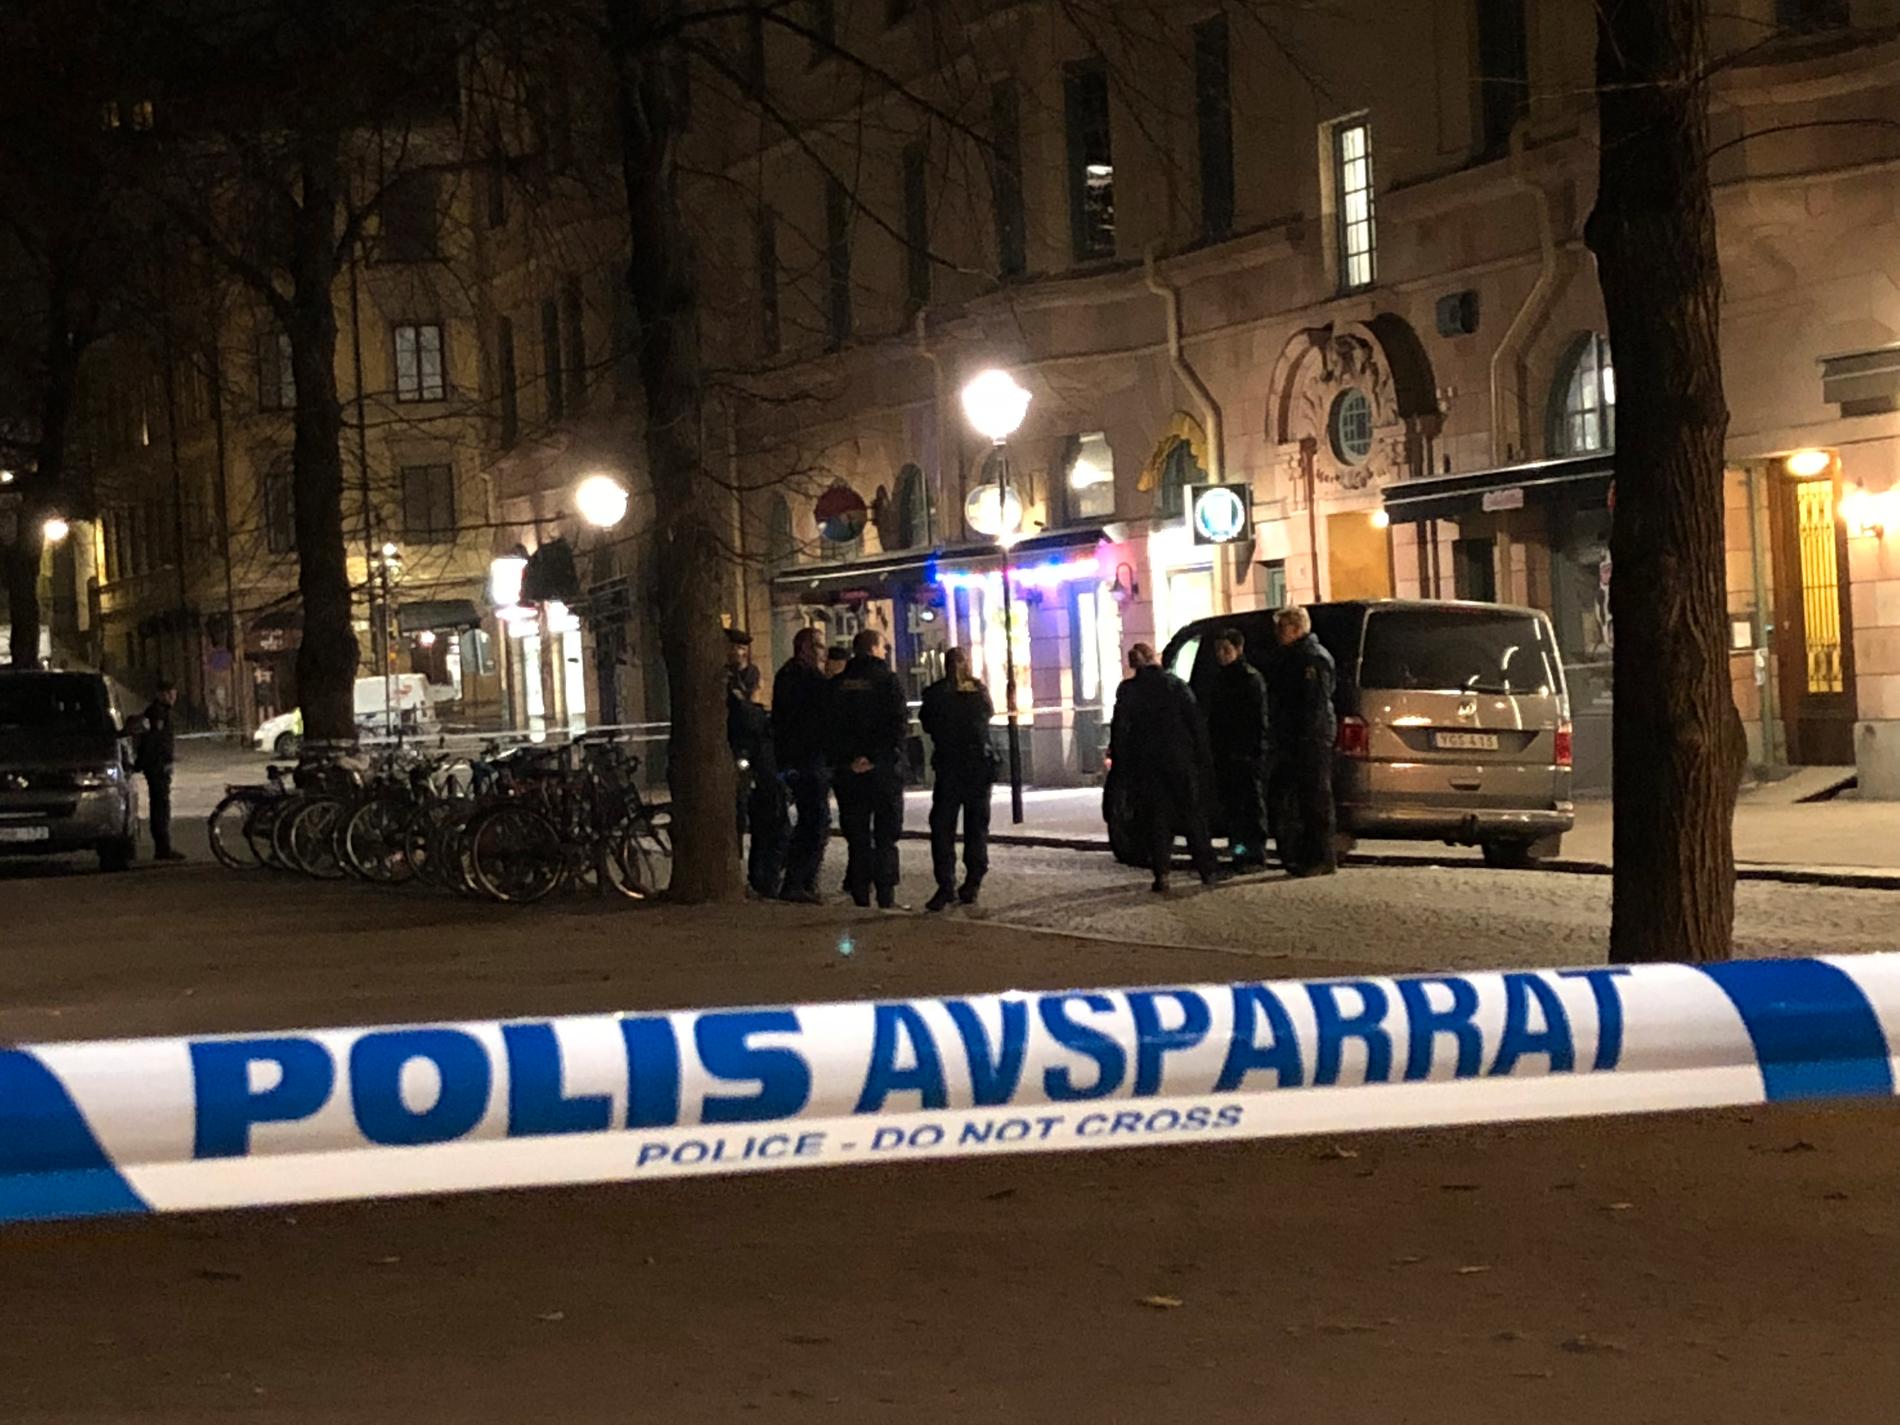 Polis på plats efter detonation i Stockholm i slutet av 2018